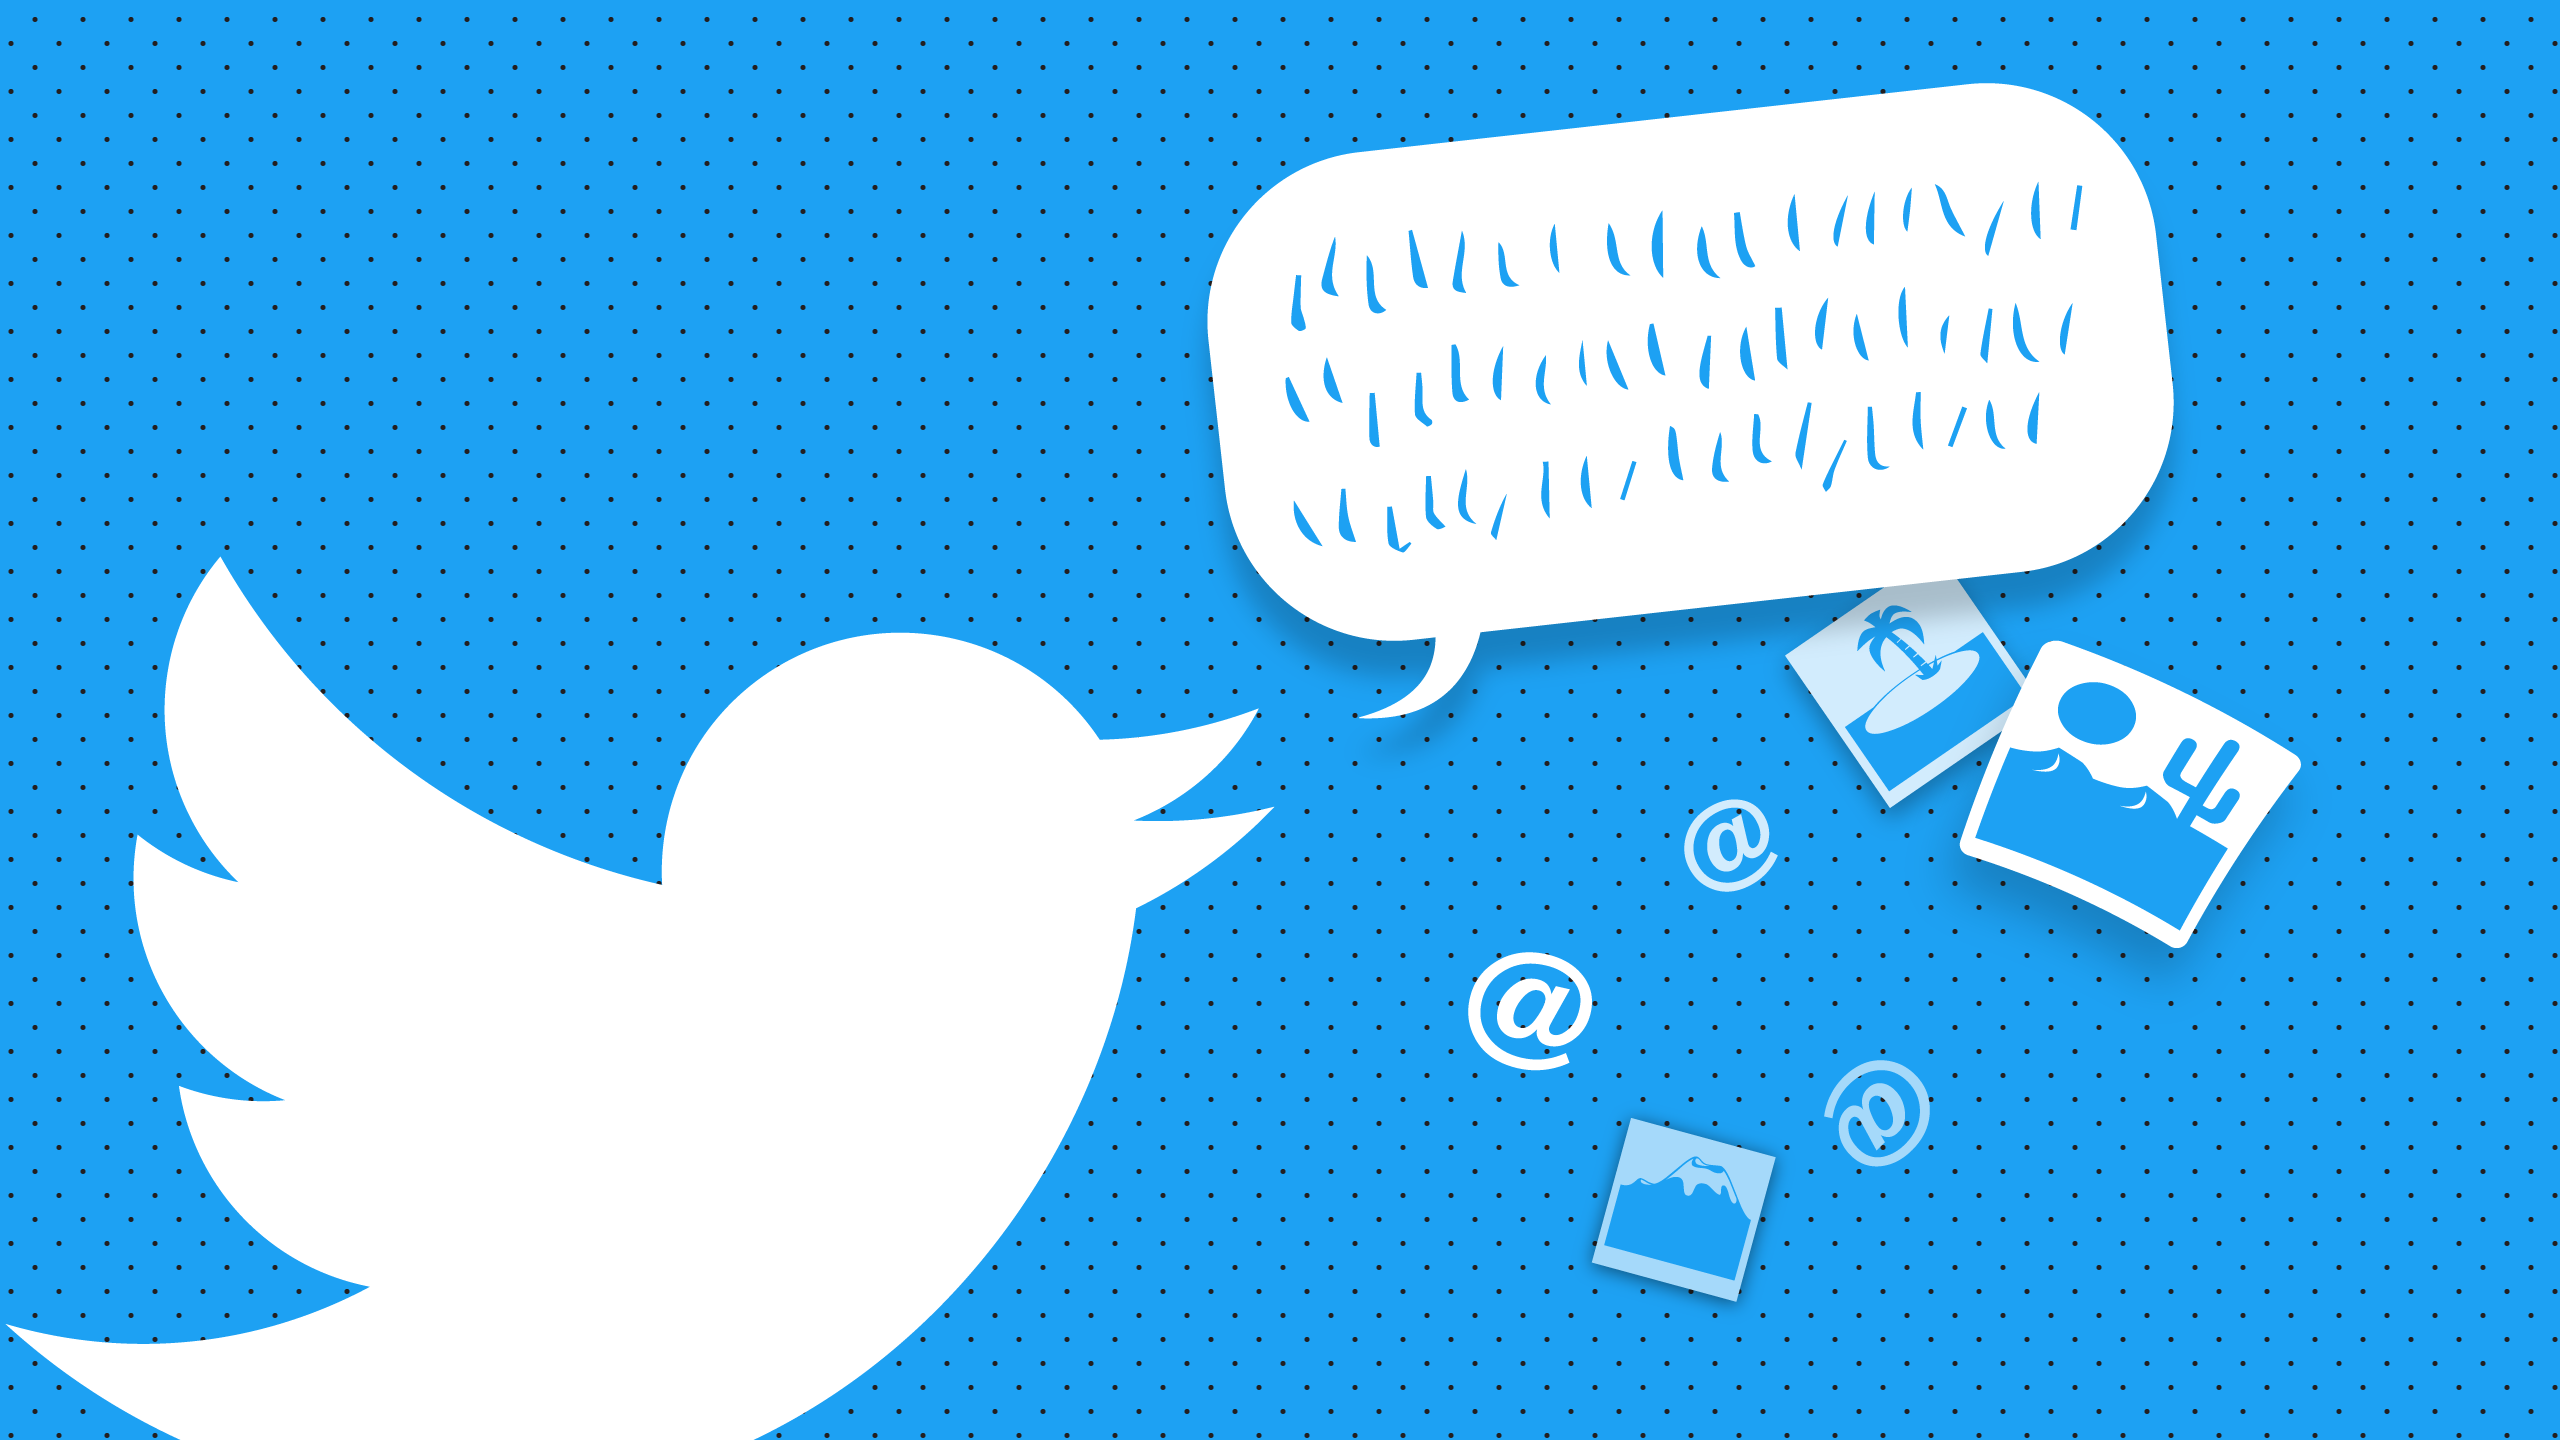 ميزة جديدة من تويتر .. عرض أهم المتابعين والمجموعات على الشبكة